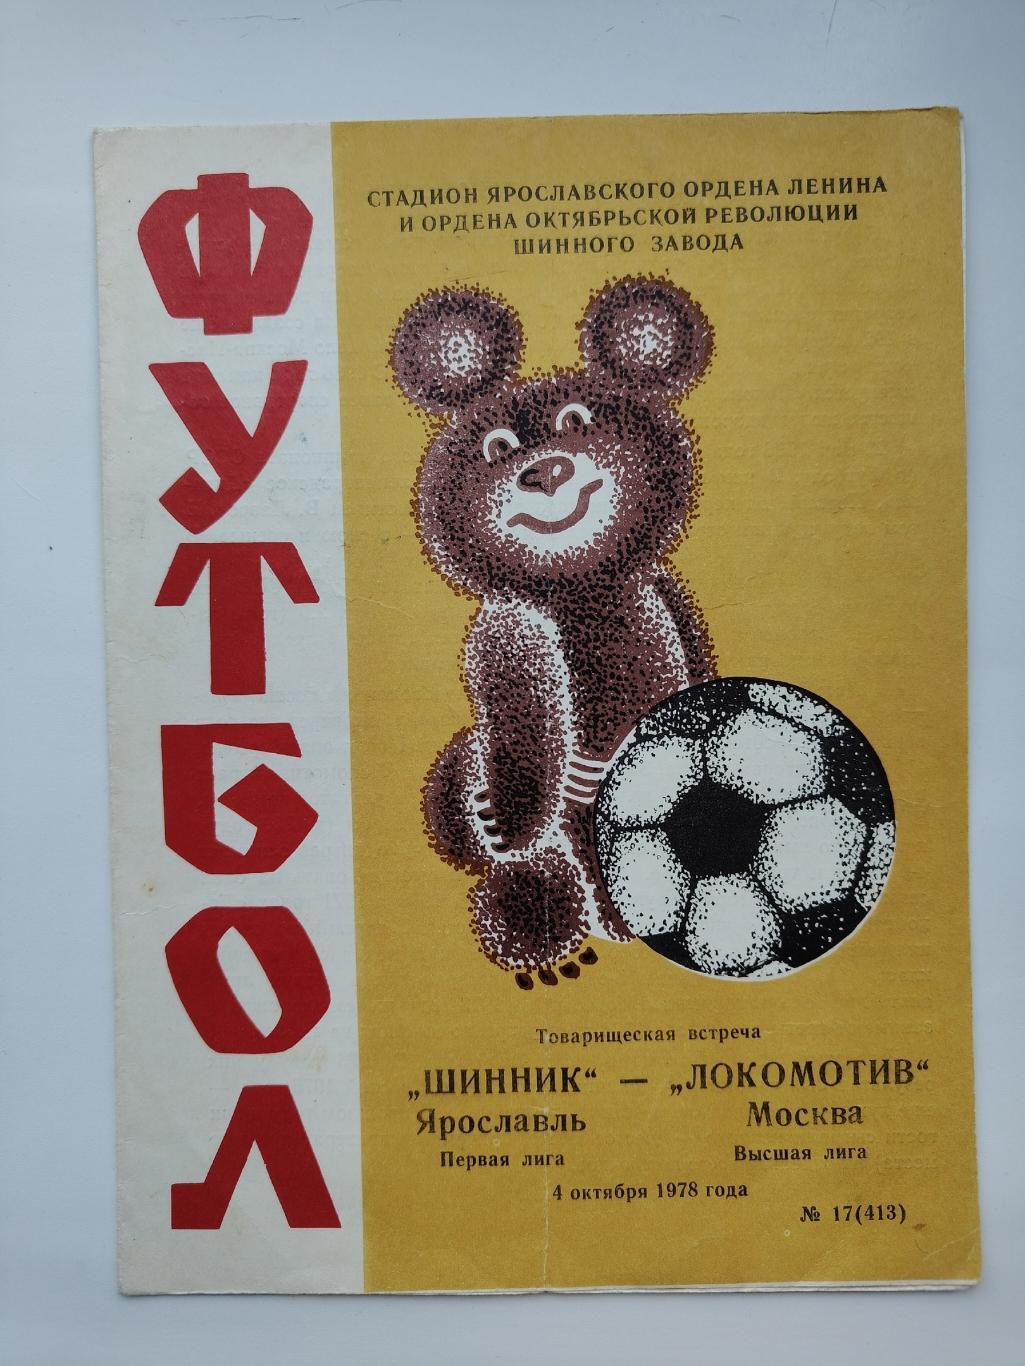 Шинник Ярославль - Локомотив Москва 1978 ТМ